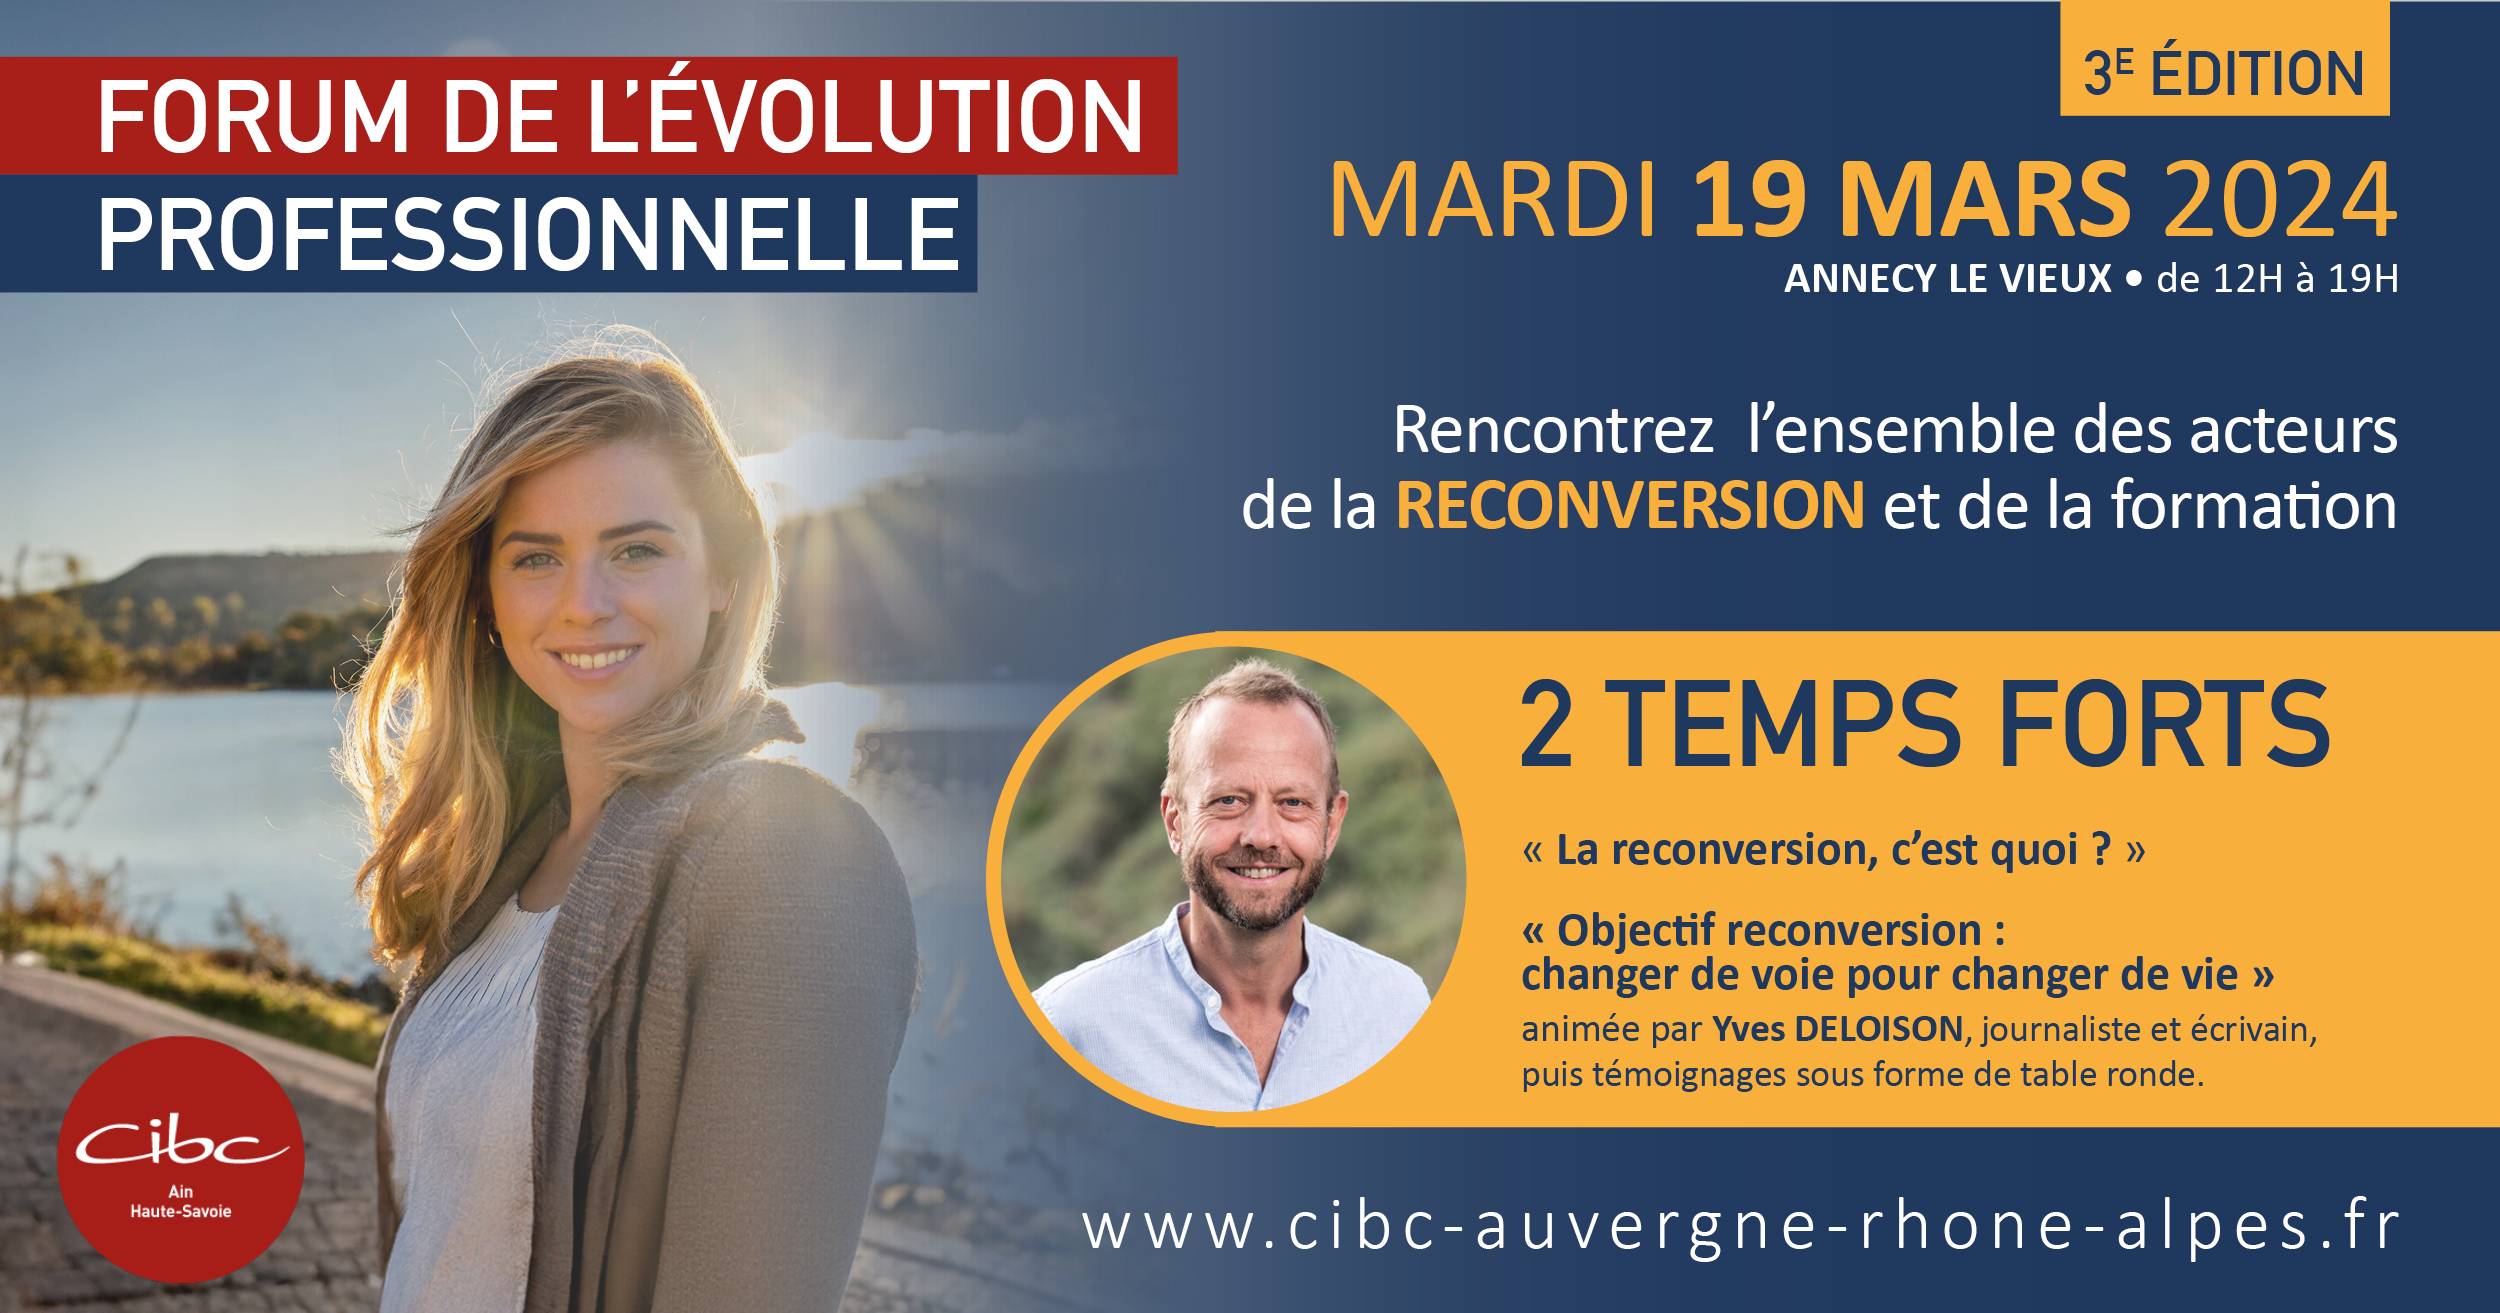 Forum de l’évolution professionnelle le 19 mars à Annecy